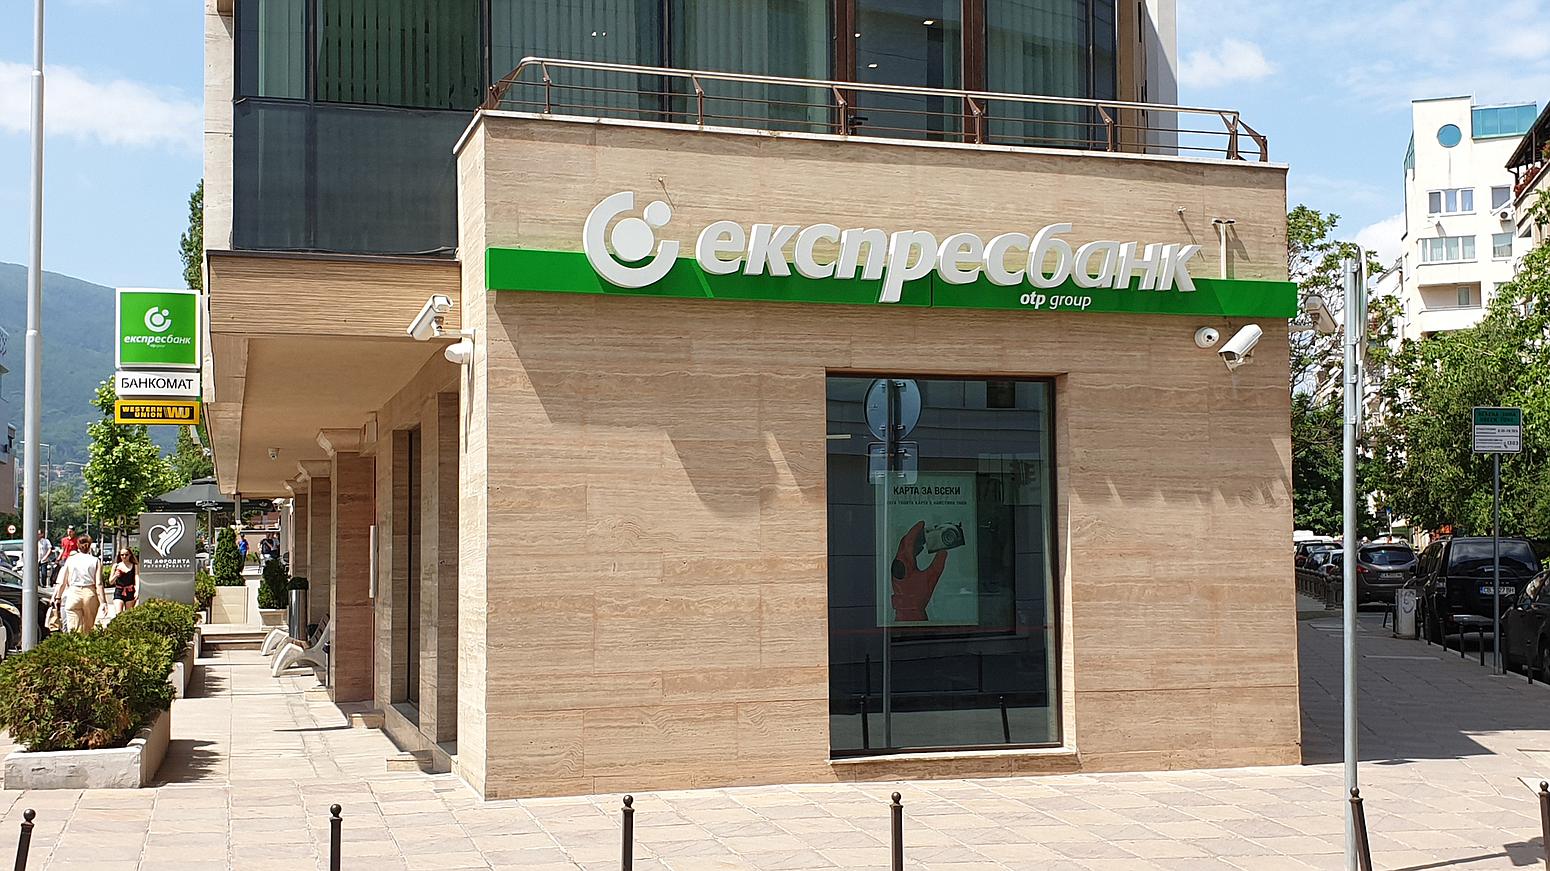 Exterior signage of Express Bank